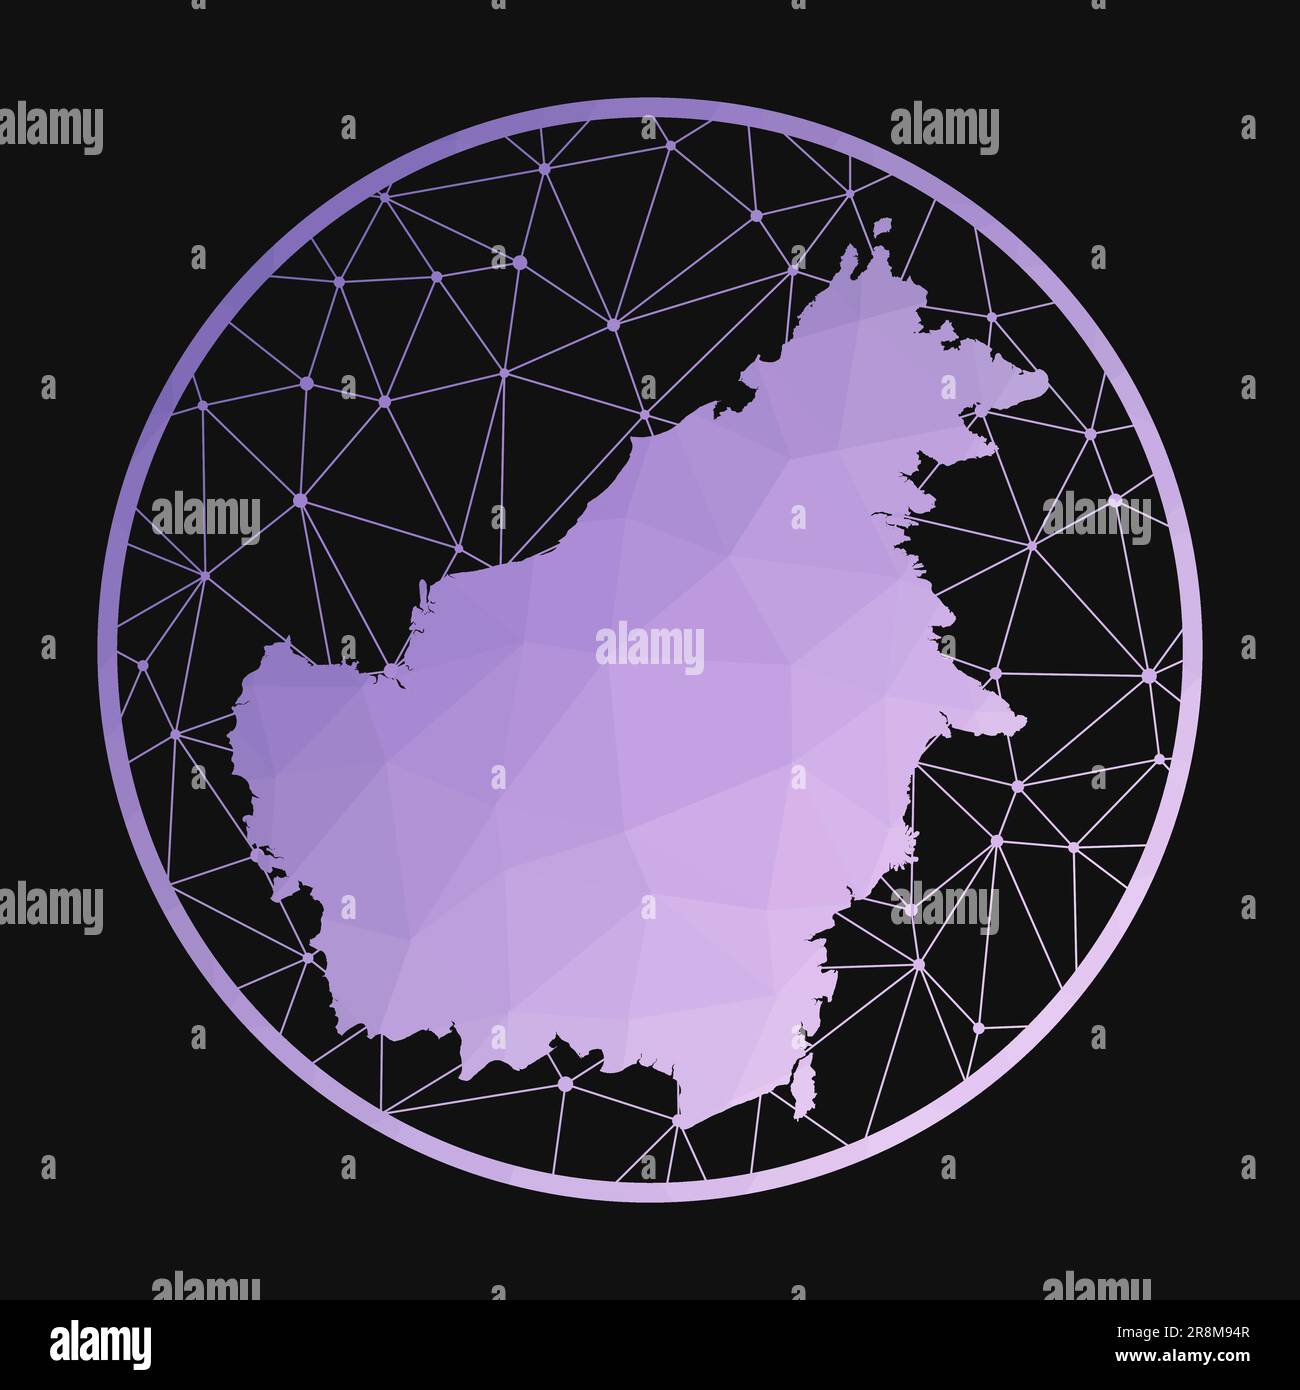 Icona del Borneo. Mappa poligonale vettoriale dell'isola. Icona Borneo in stile geometrico. La mappa dell'isola con basso polygradient viola su sfondo scuro. Illustrazione Vettoriale